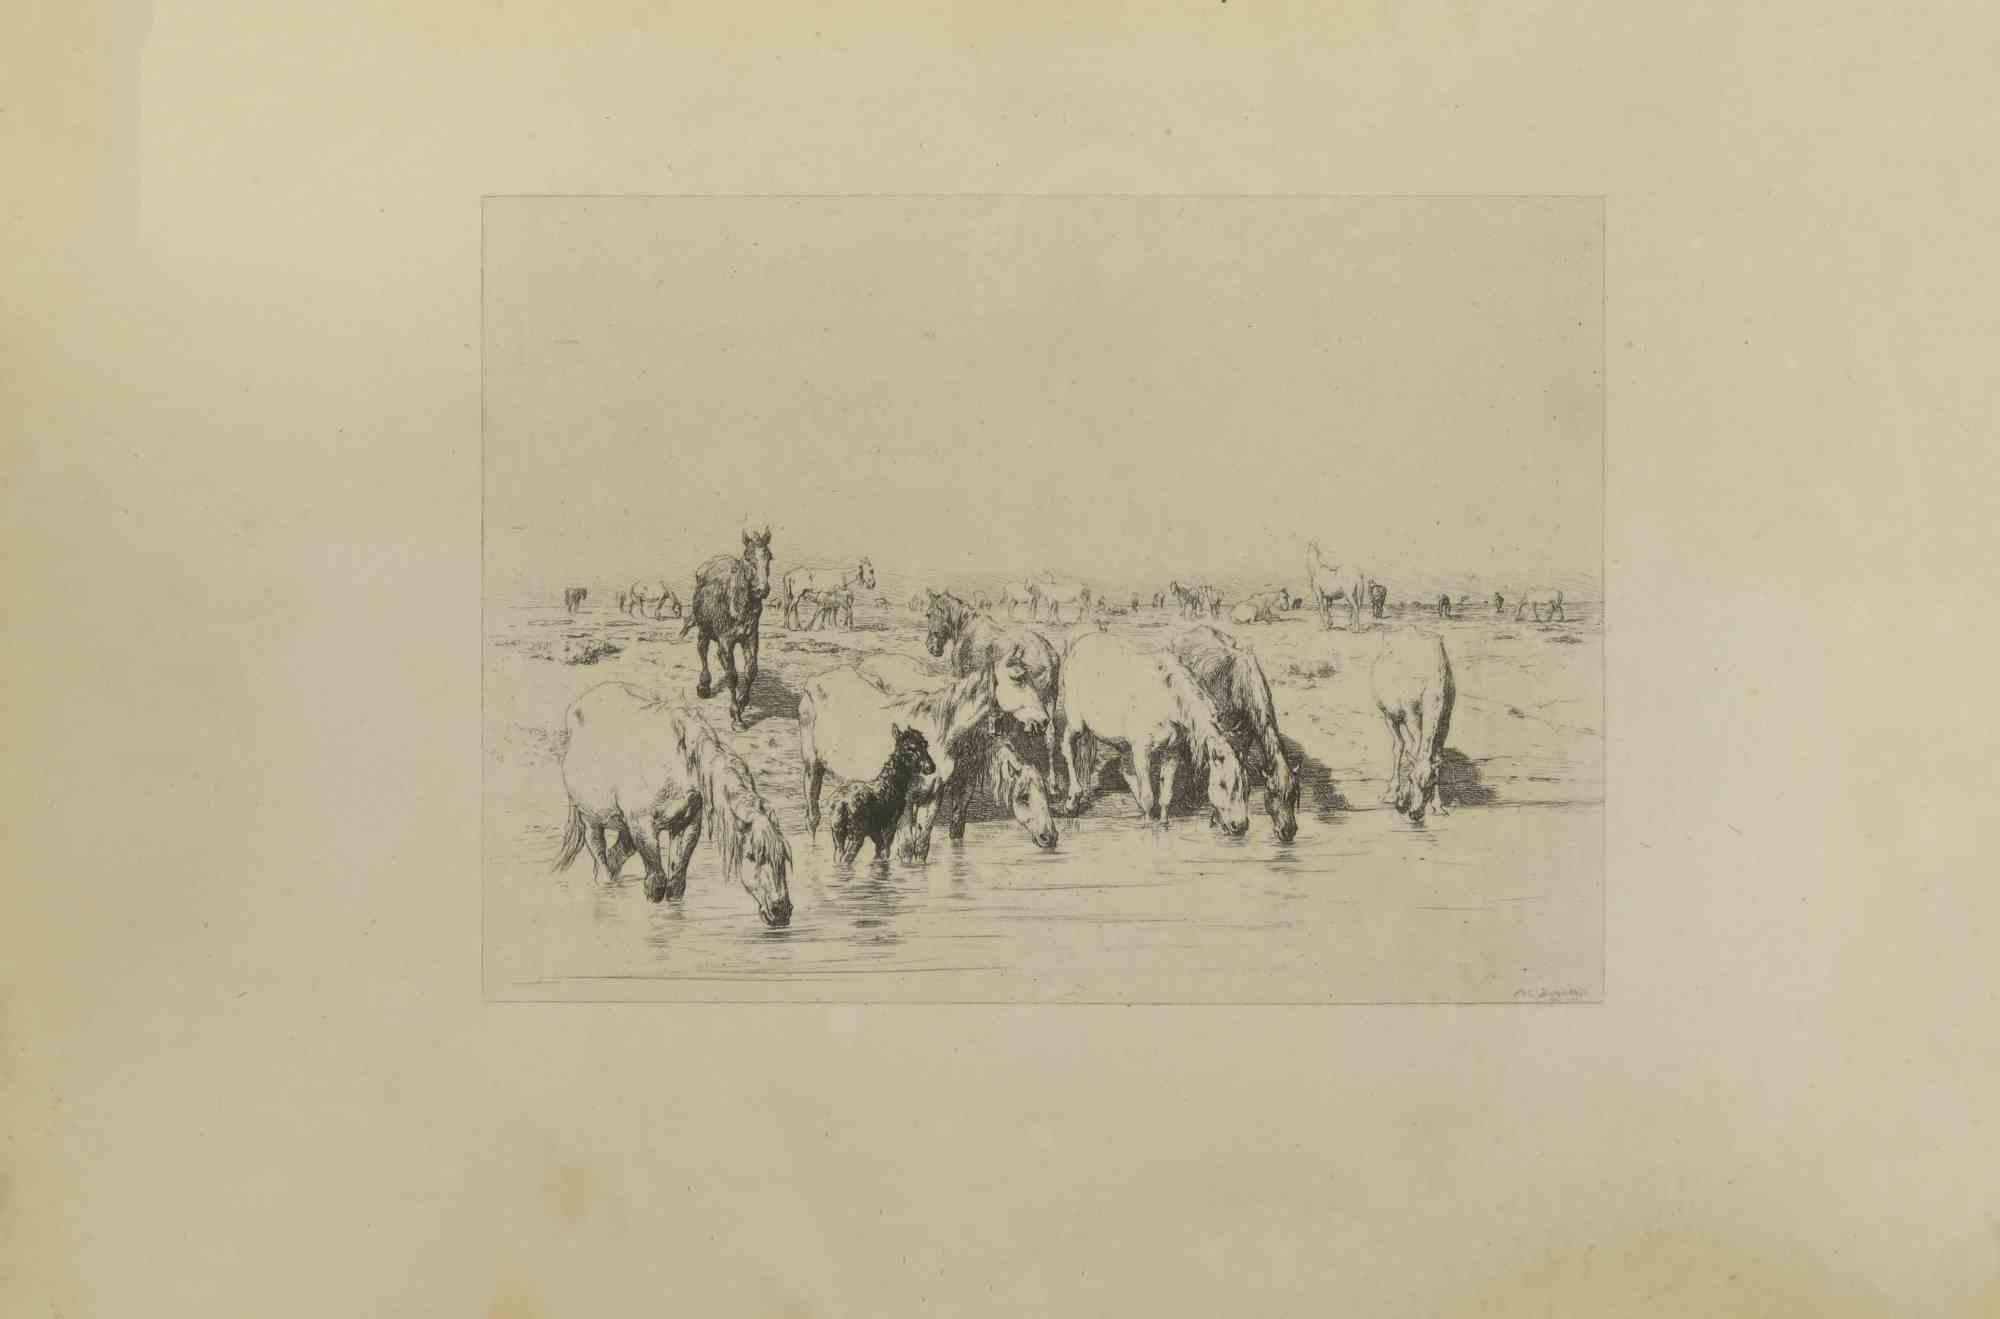 Troupeau de chevaux est une gravure originale réalisée par Eugène Burnand (1850-1921) à la fin du 19e siècle.

Signé sur la plaque.

Bon état avec des rousseurs.
 
L'œuvre est réalisée par des traits courts et habiles, une scène admirable créée par